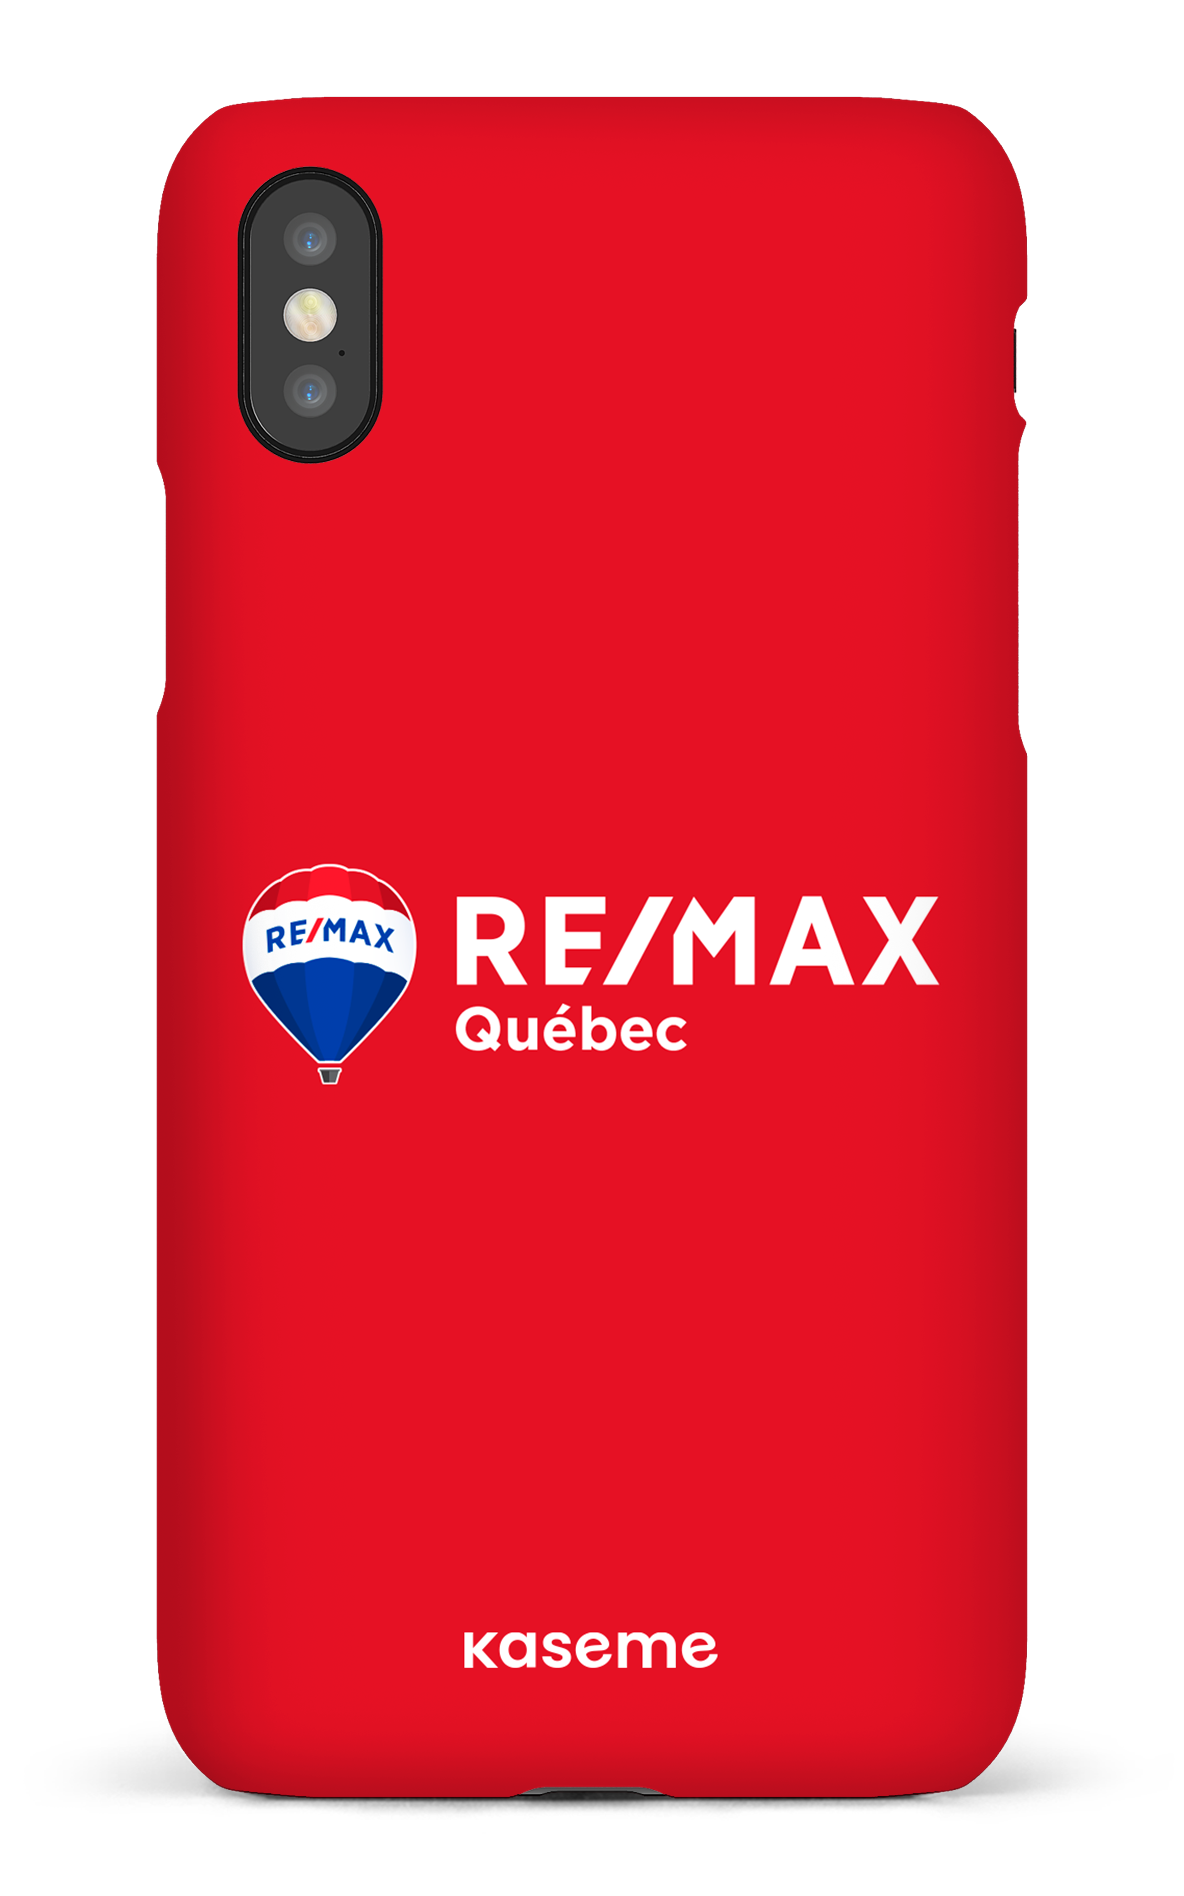 Remax Québec Rouge - iPhone X/Xs